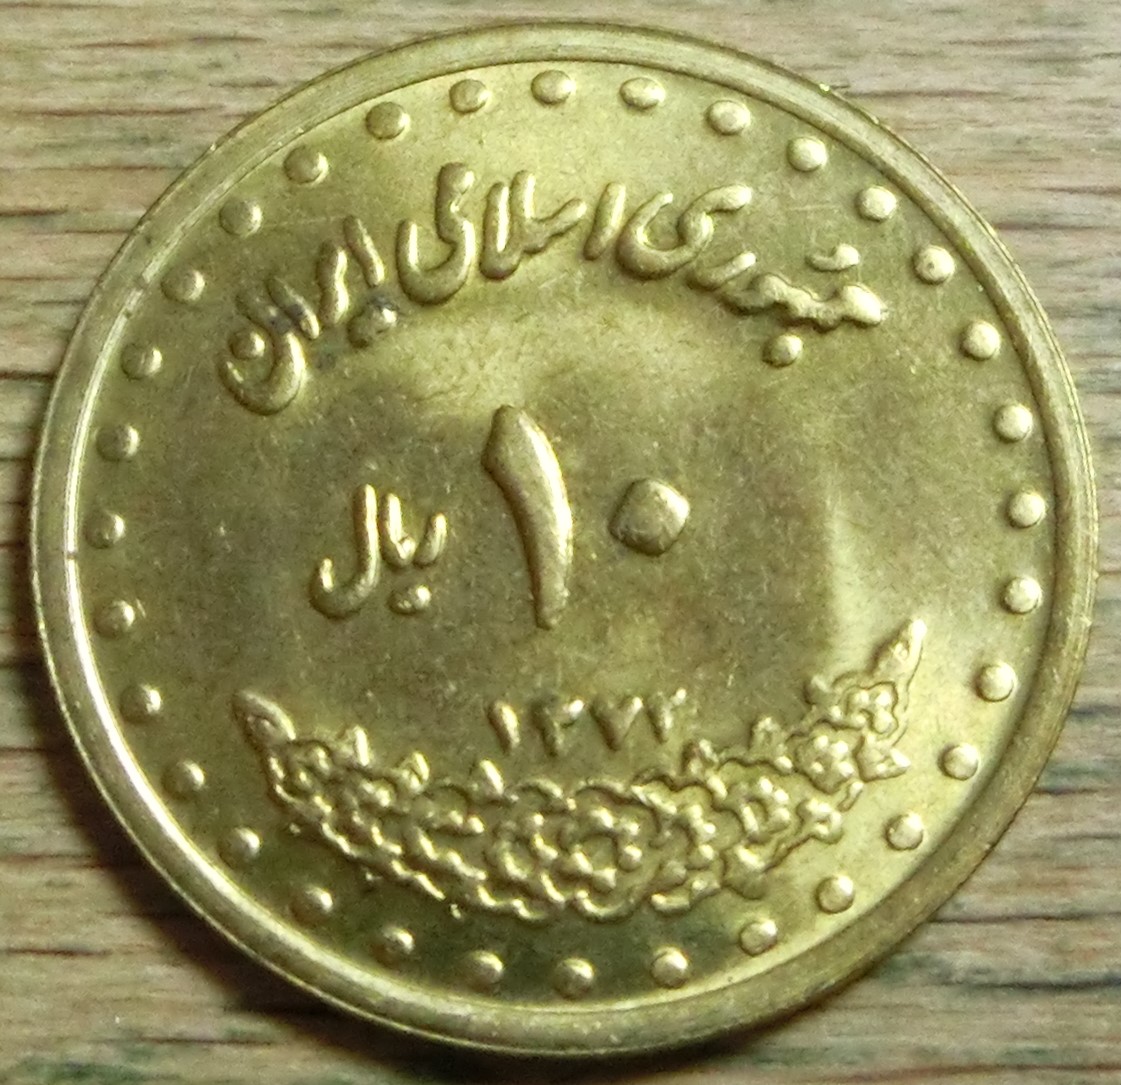  Iran 10  Rials  1372 (1)   